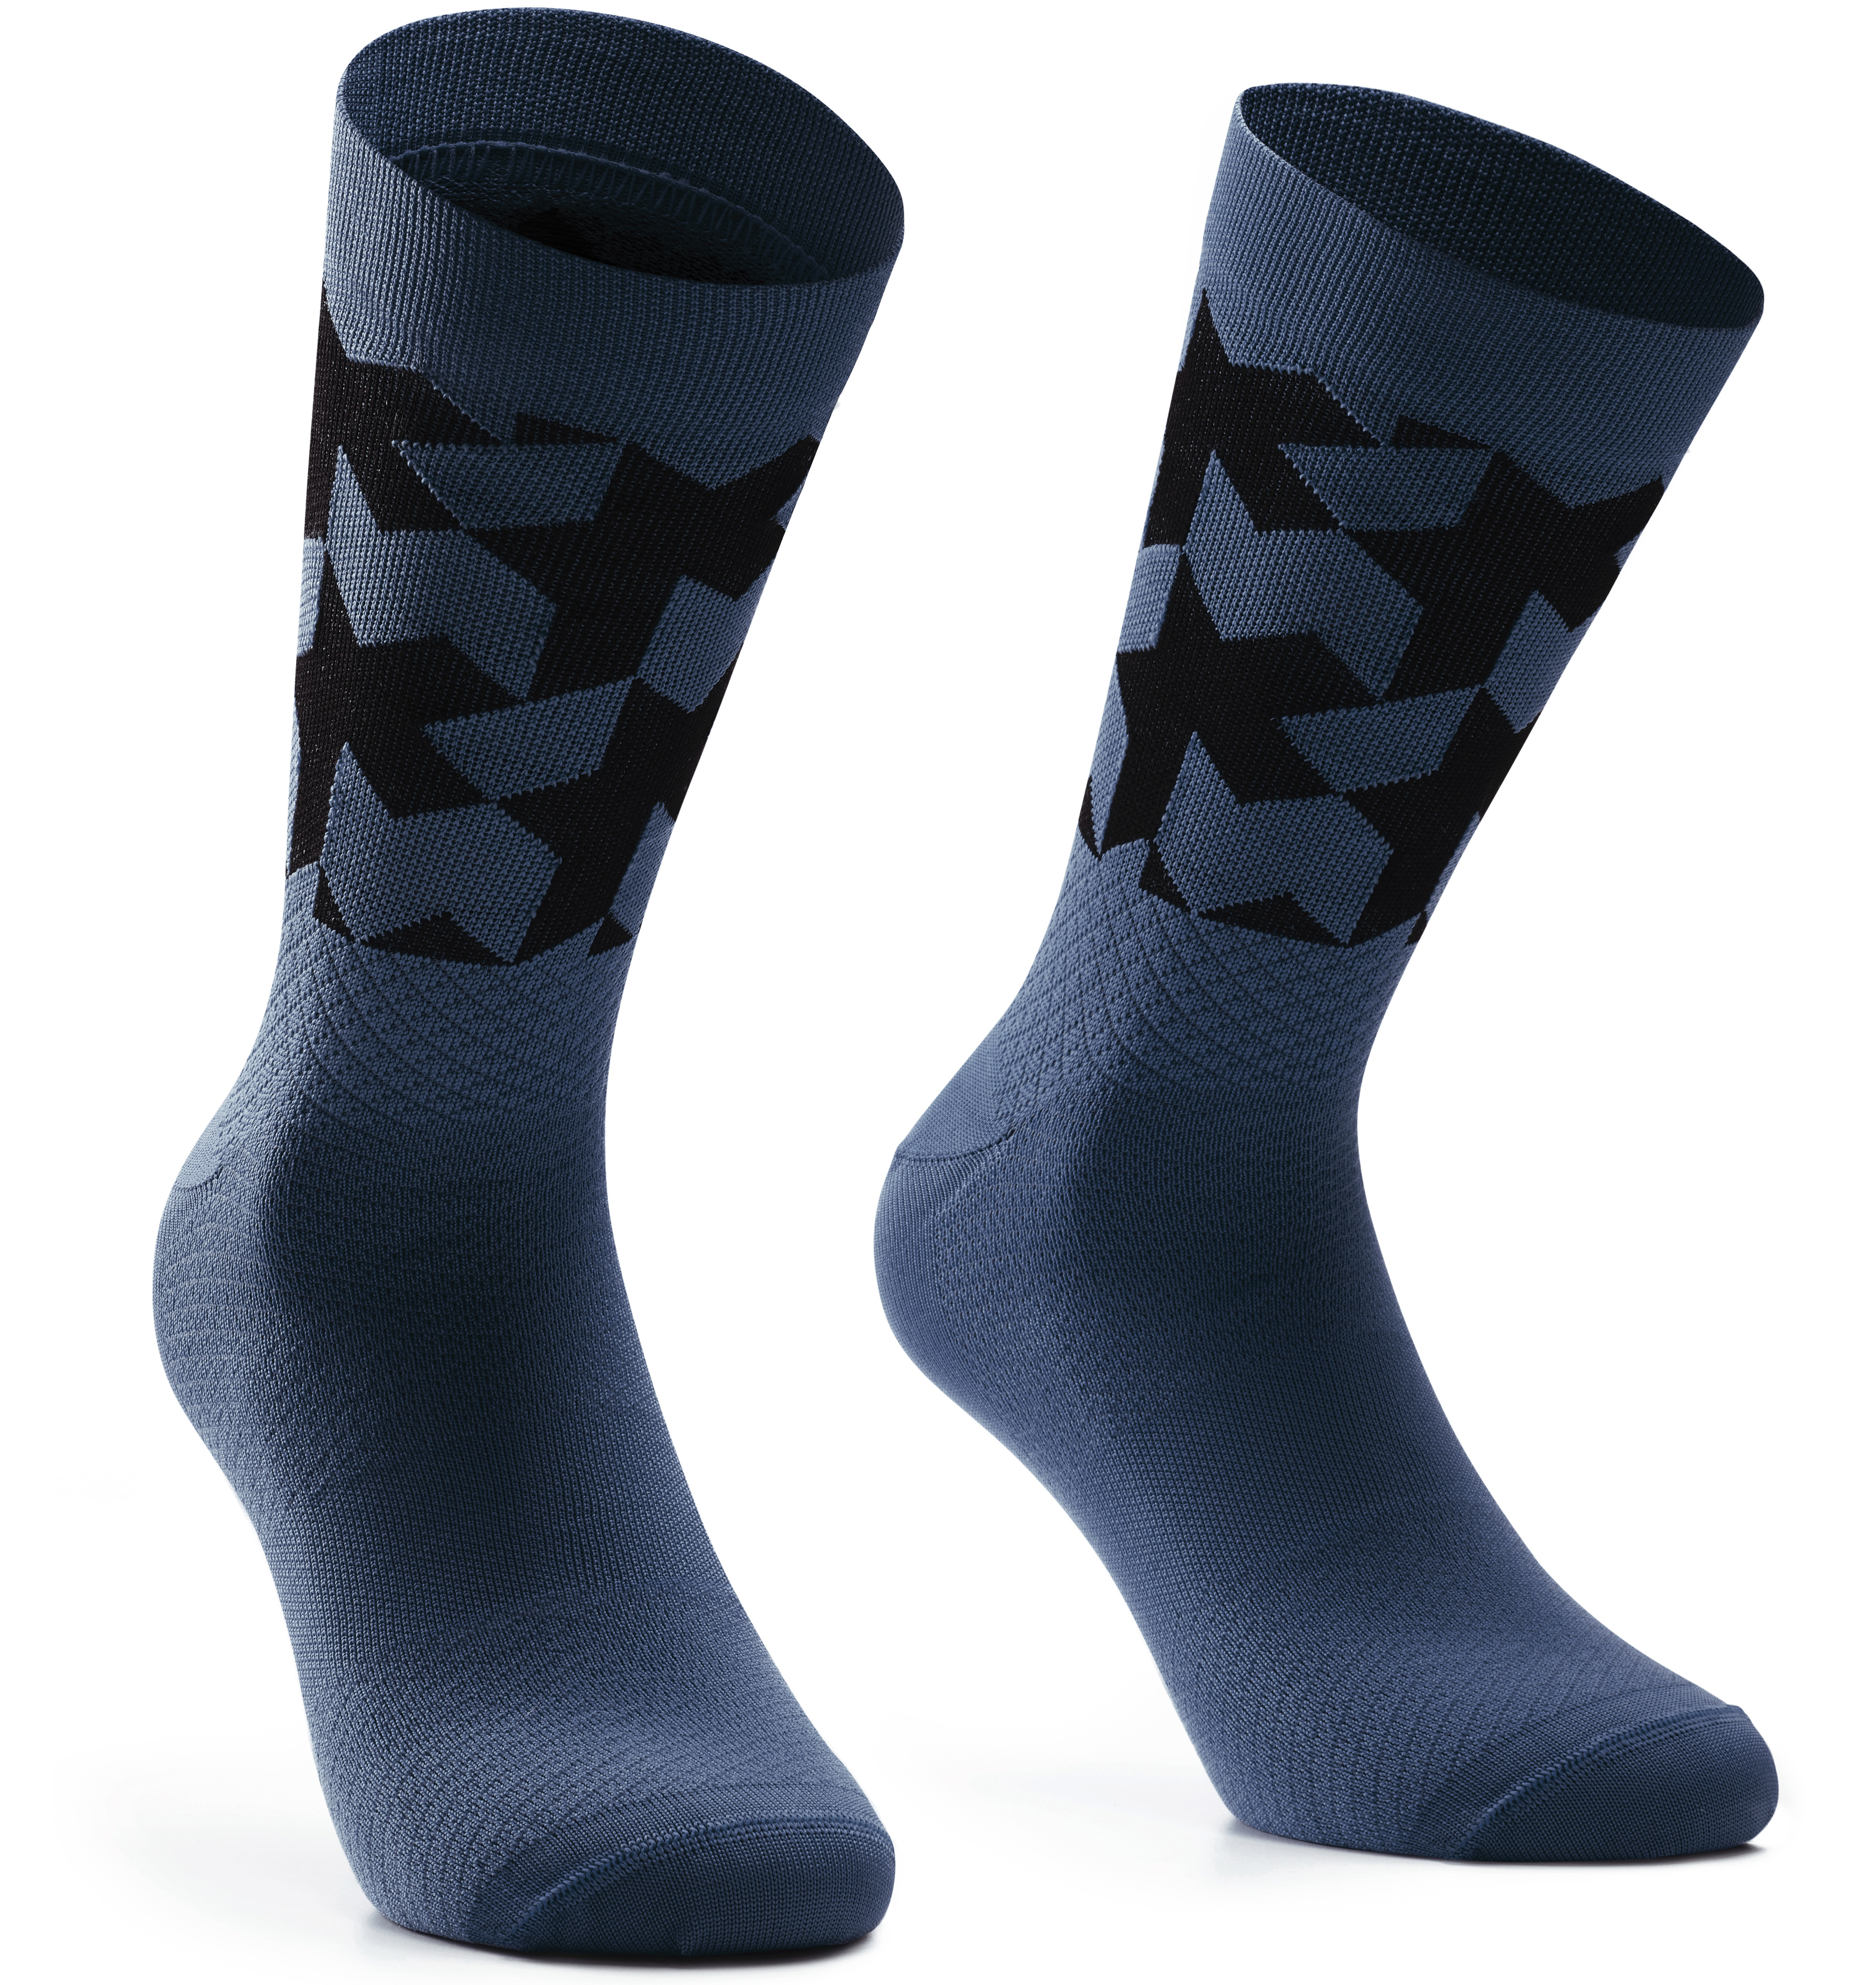 Носки ASSOS Monogram Socks Evo, мужские, сине-черные, I/39-42 фото 